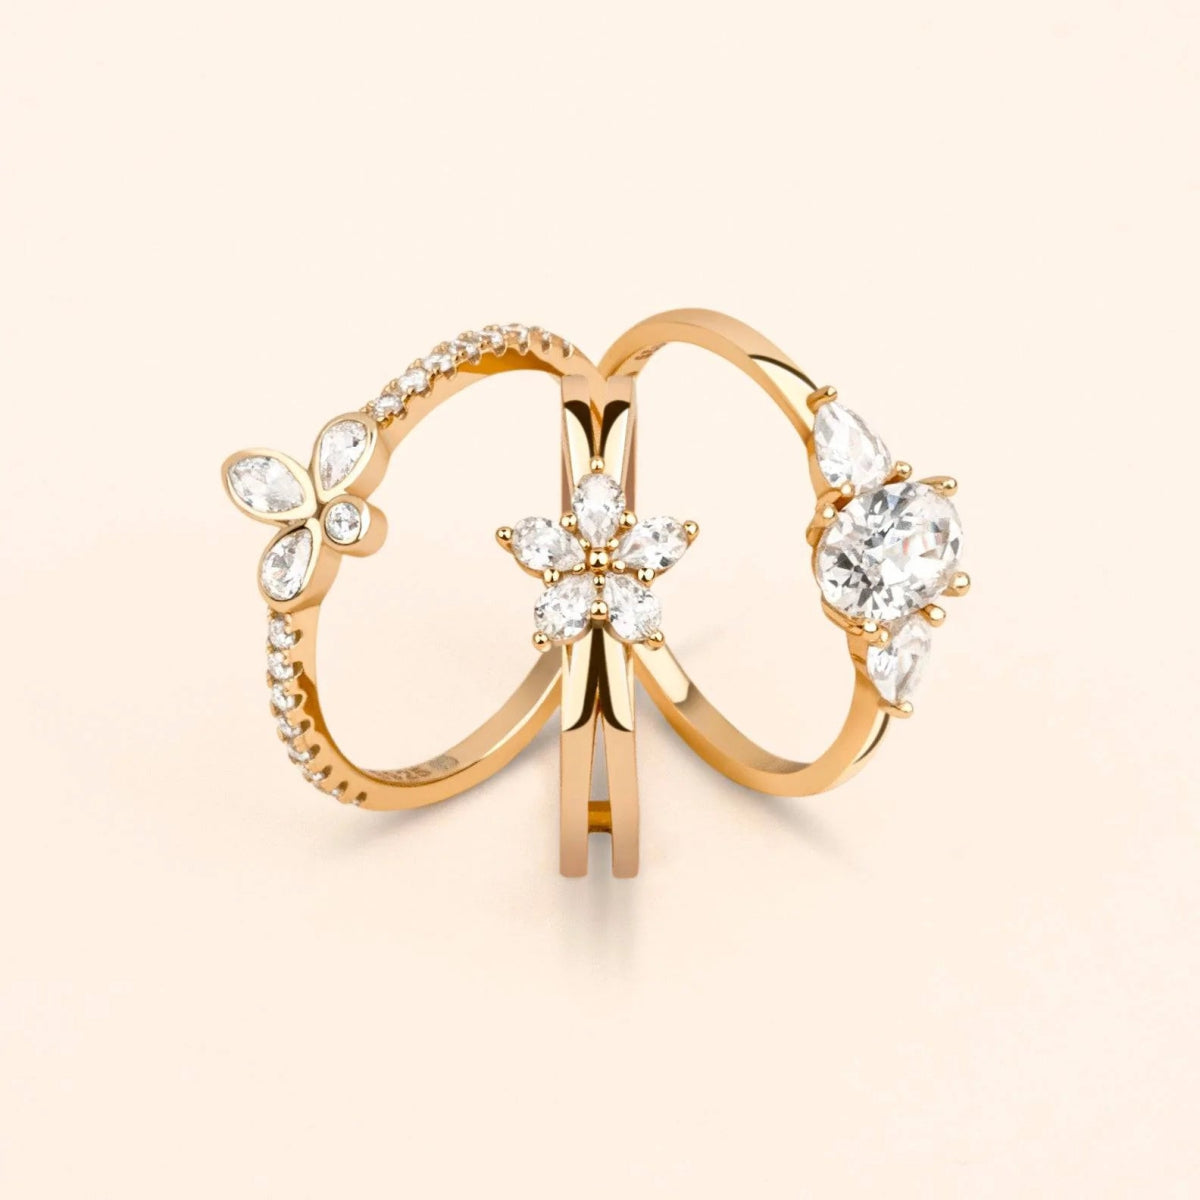 "Petals" Ring - Milas Jewels Shop